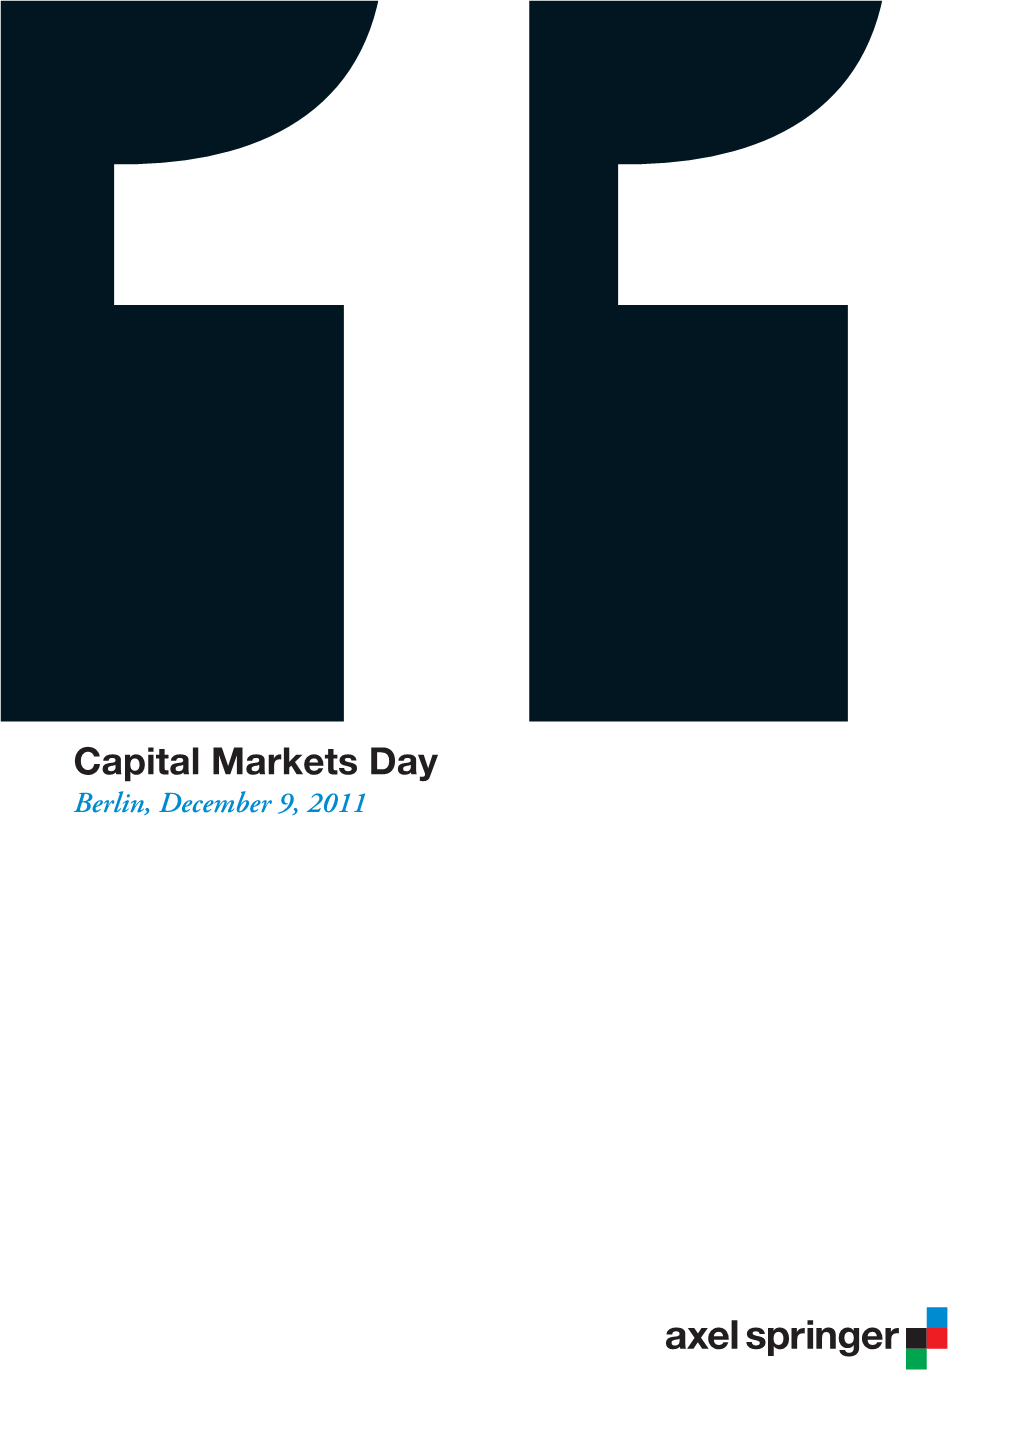 11Capital Markets